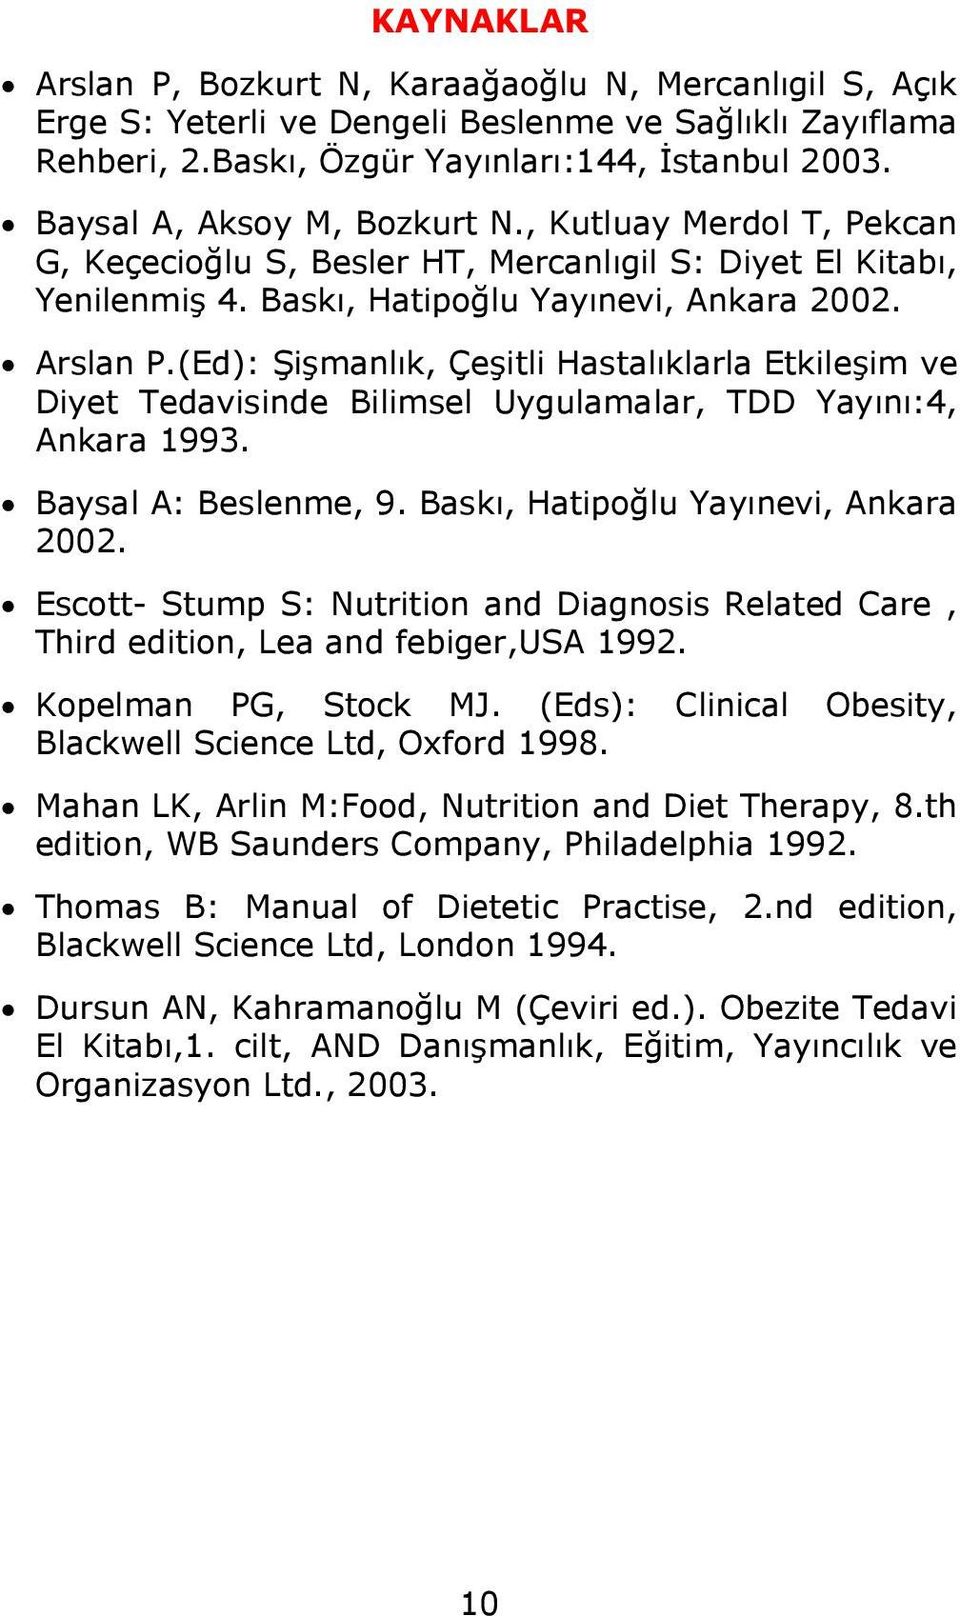 (Ed): Şişmanlık, Çeşitli Hastalıklarla Etkileşim ve Diyet Tedavisinde Bilimsel Uygulamalar, TDD Yayını:4, Ankara 1993. Baysal A: Beslenme, 9. Baskı, Hatipoğlu Yayınevi, Ankara 2002.